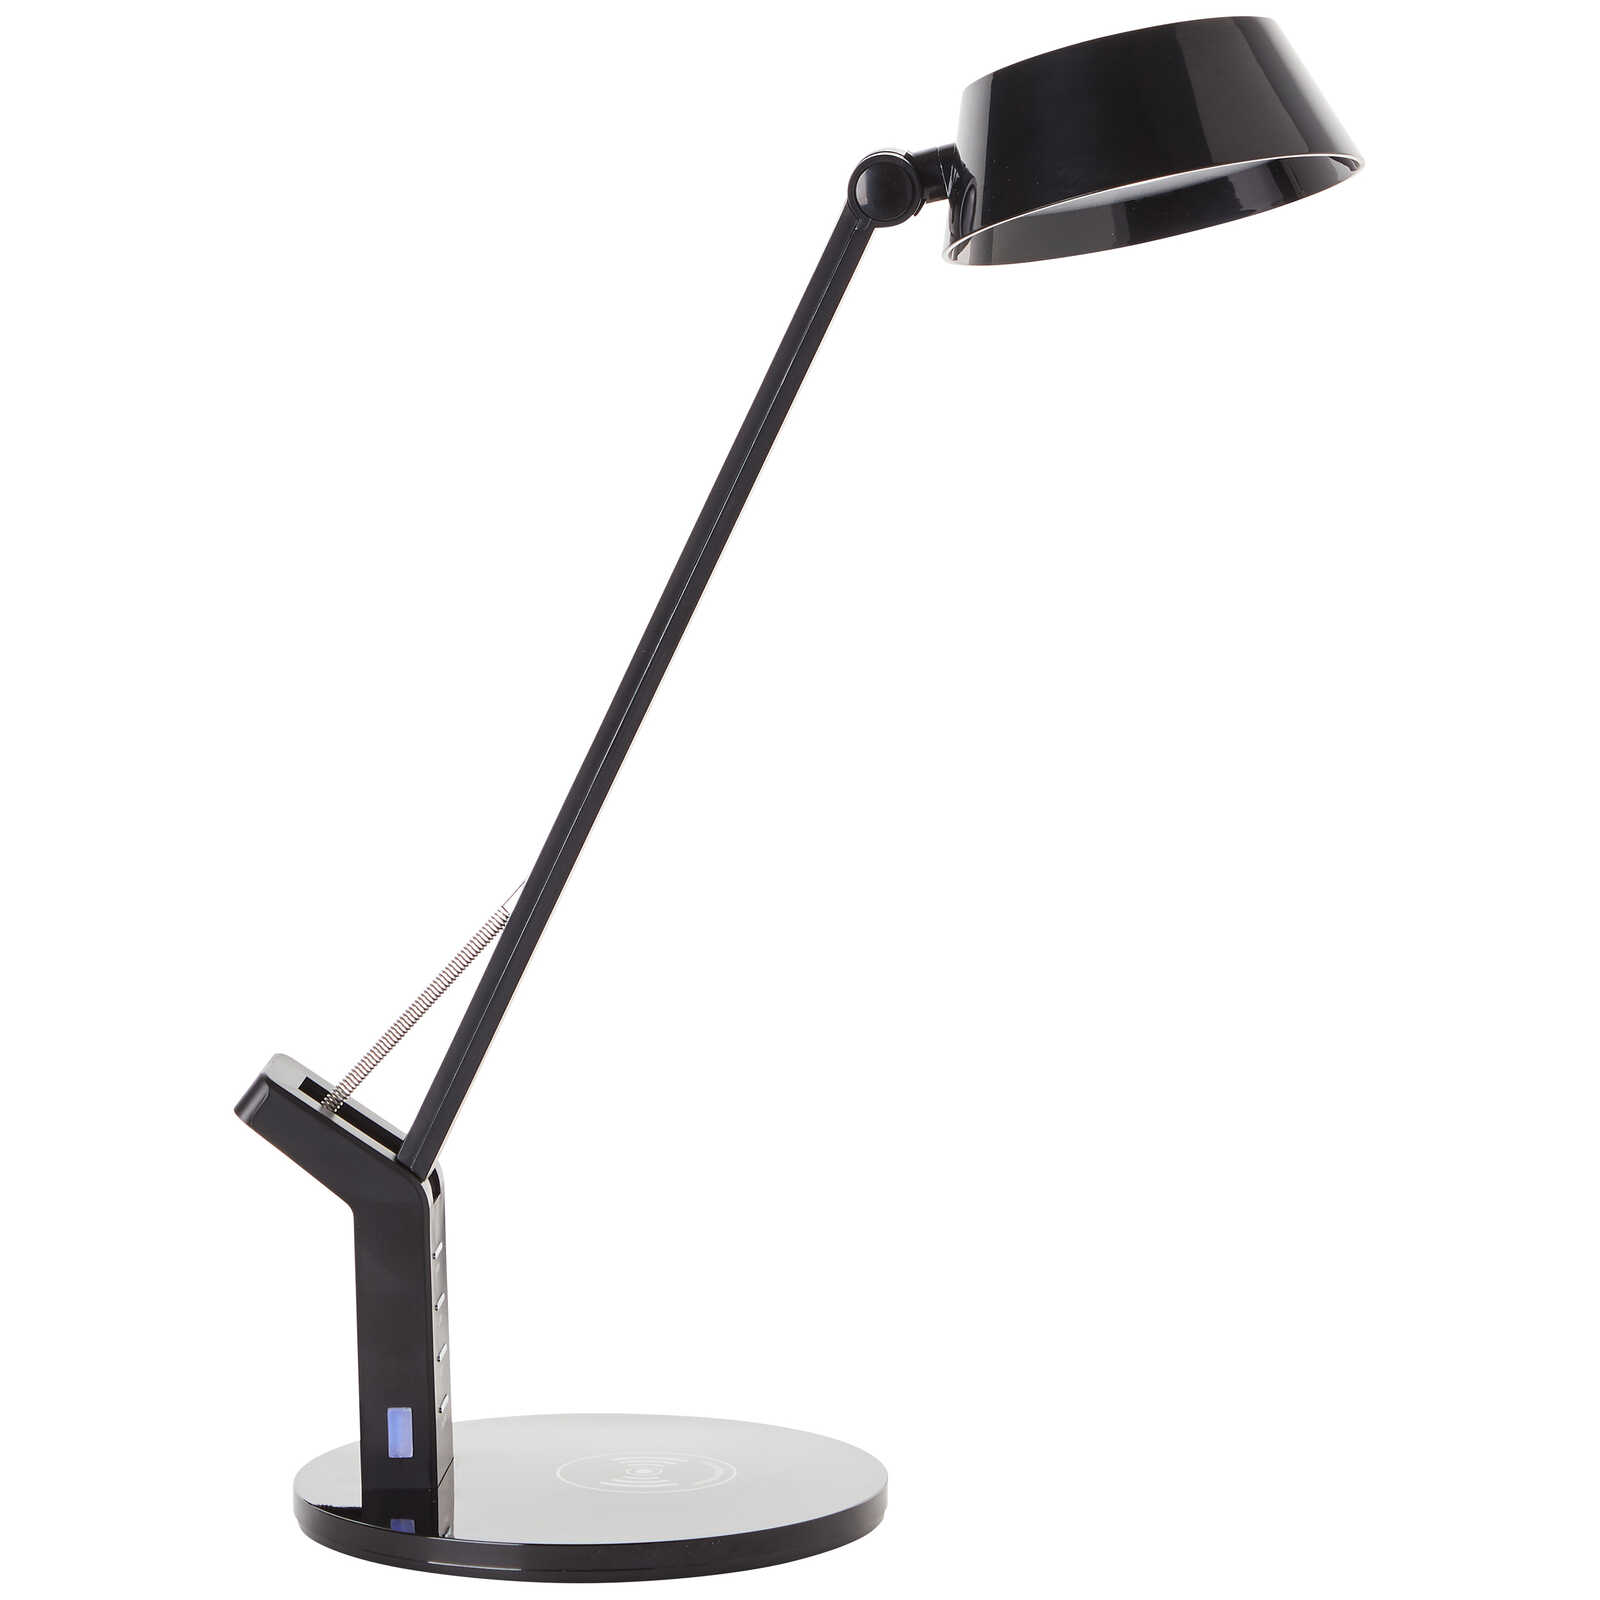             Plastic table lamp - Julius 2 - Black
        